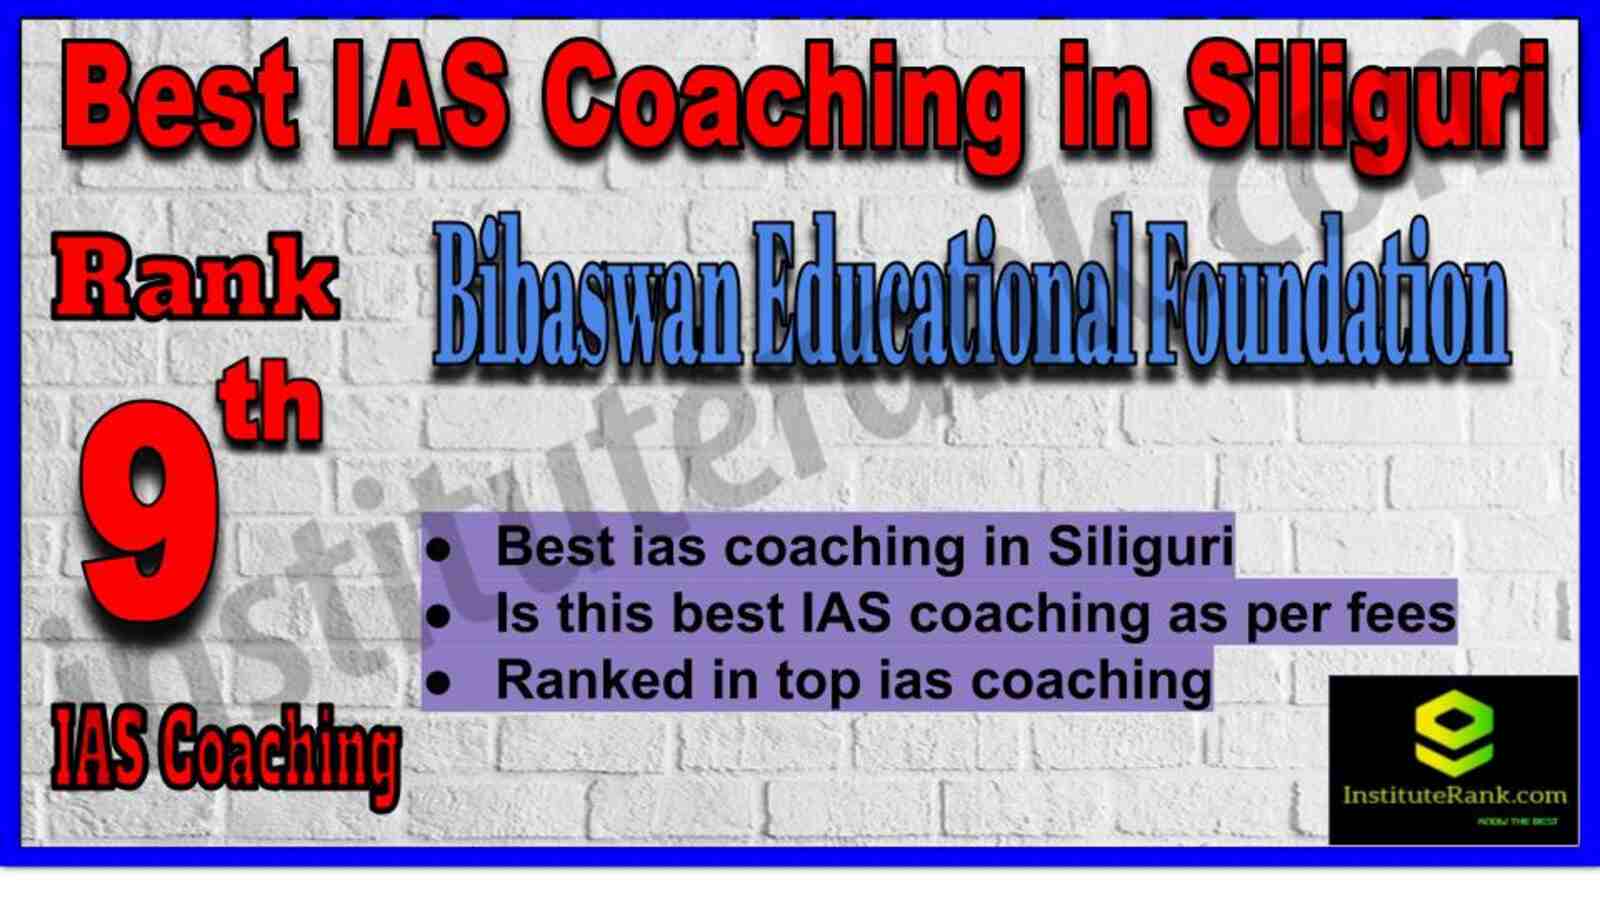 9th Best IAS Coaching in Siliguri